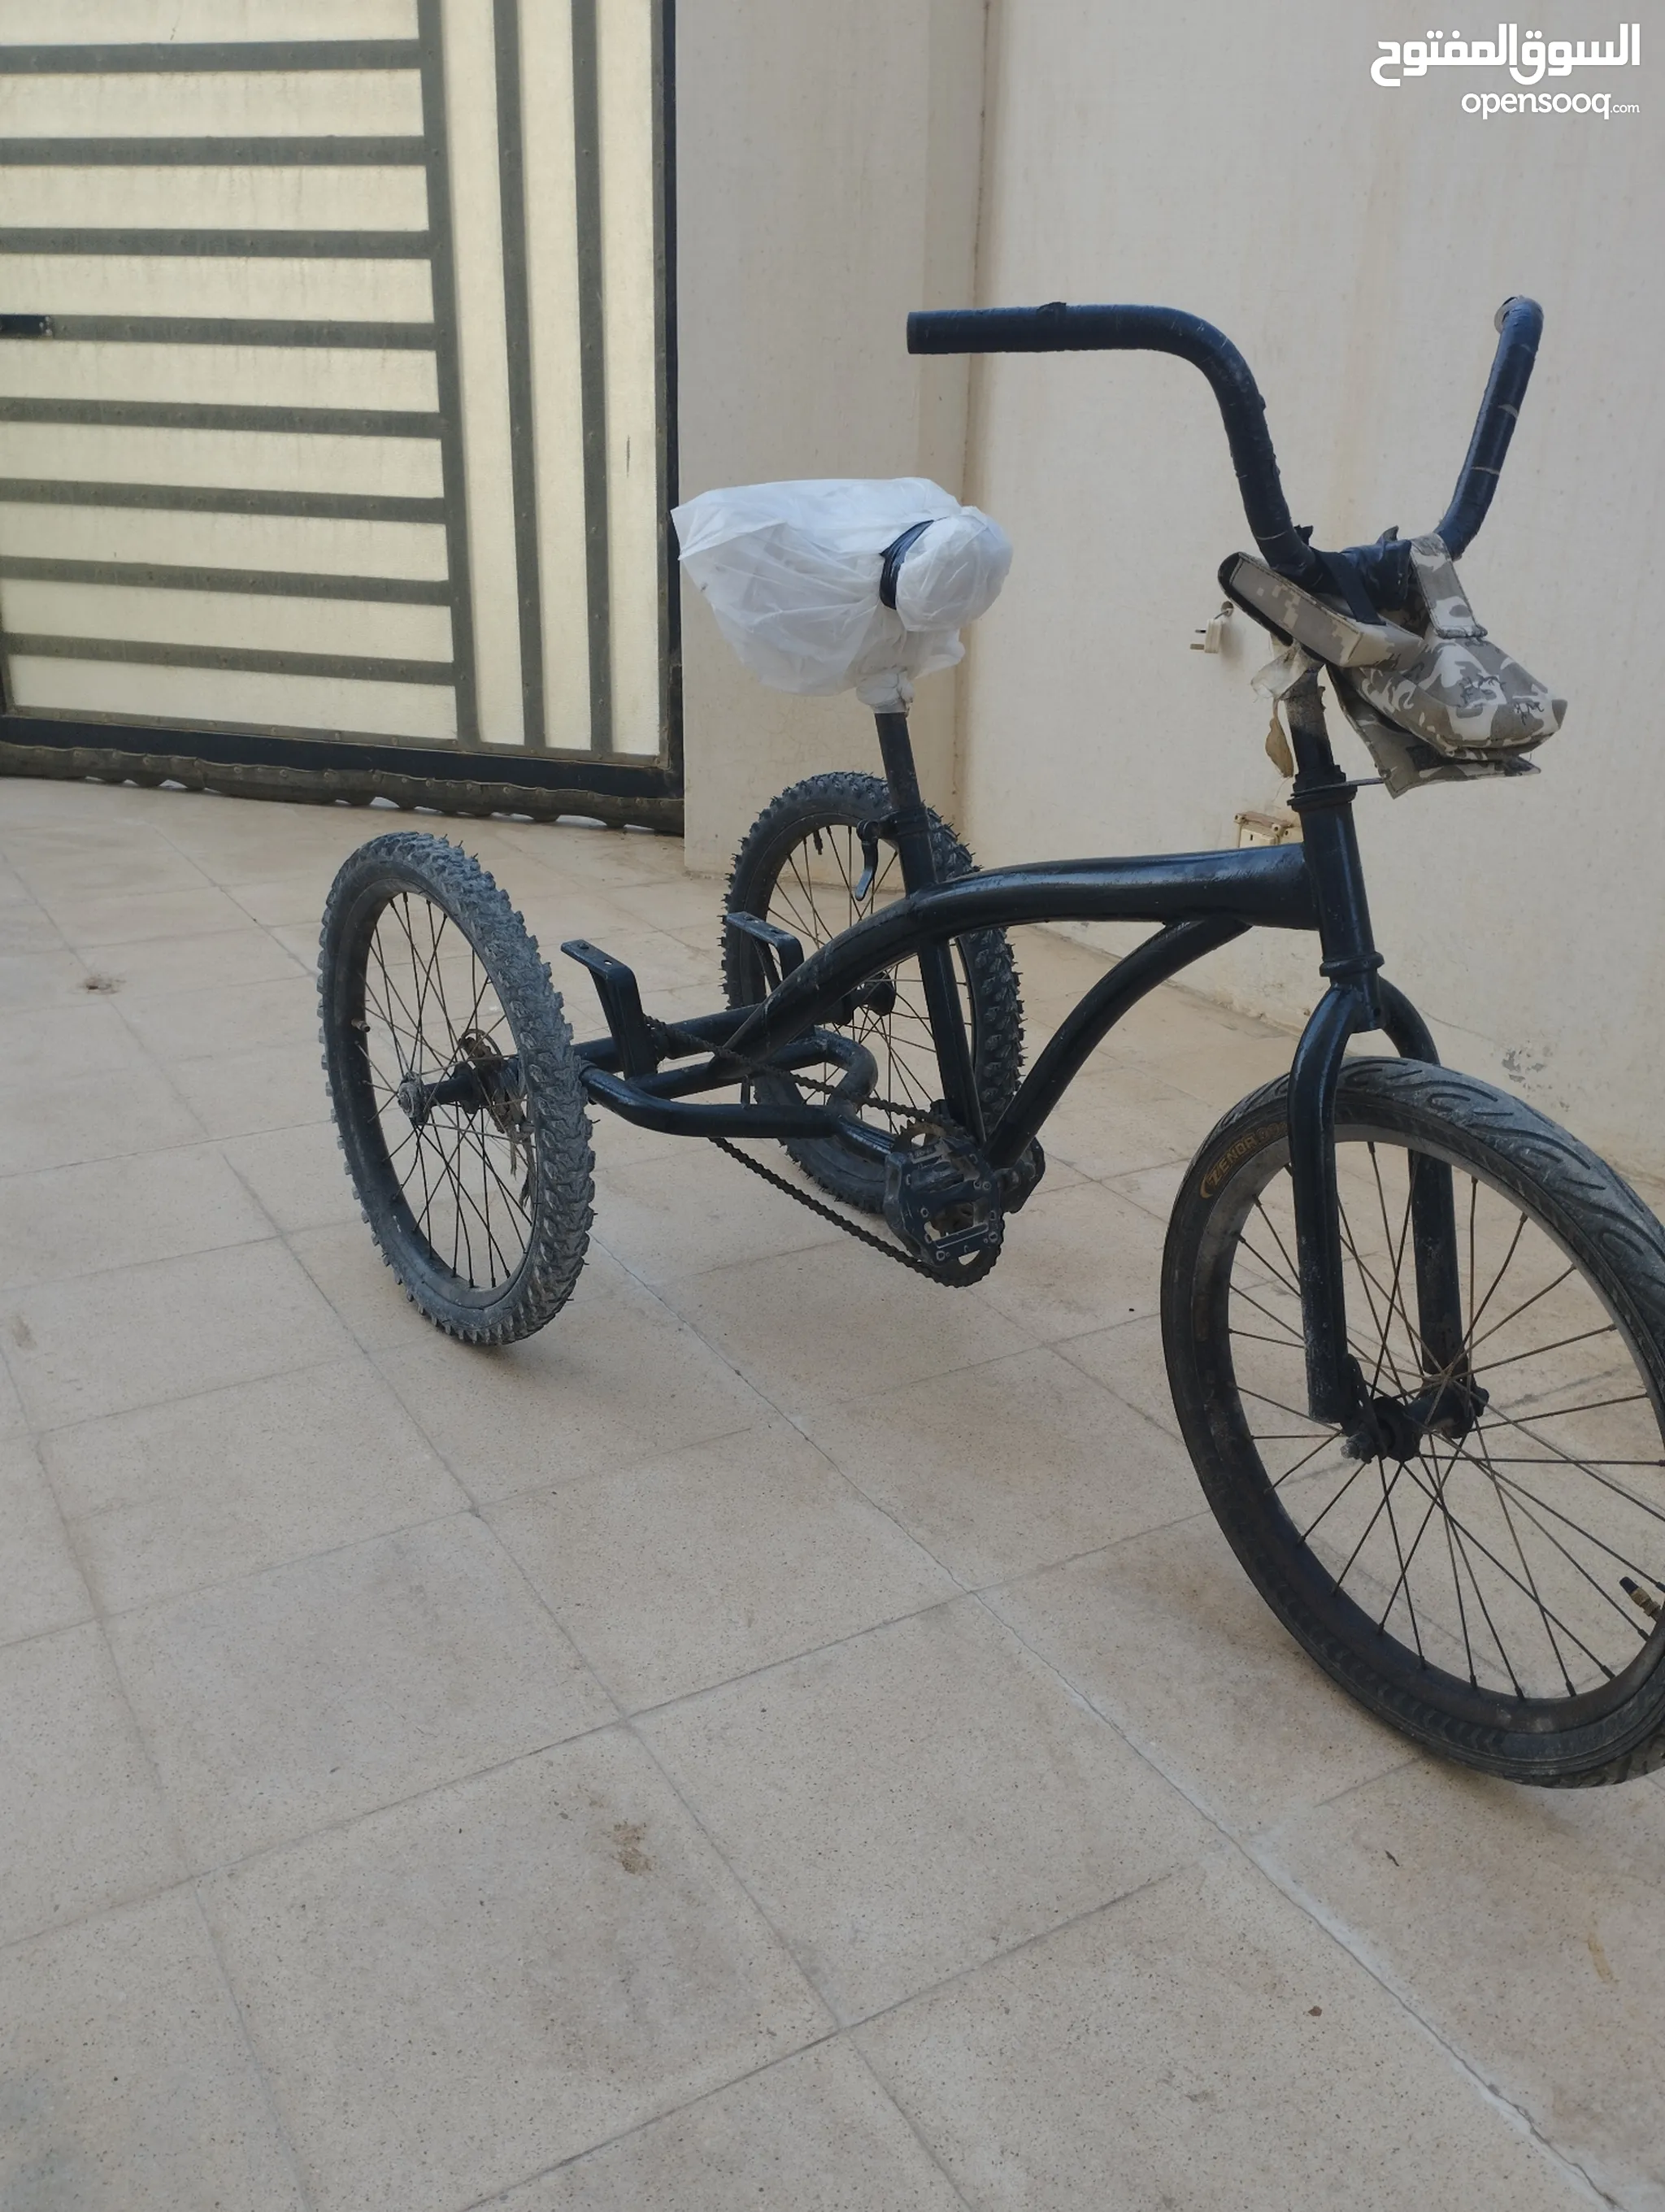 دراجات هوائية للبيع : سيكل رياضي : دراجات ياباني : جبلية للأطفال : قطع غيار  واكسسوار : ارخص الاسعار في عُمان | السوق المفتوح